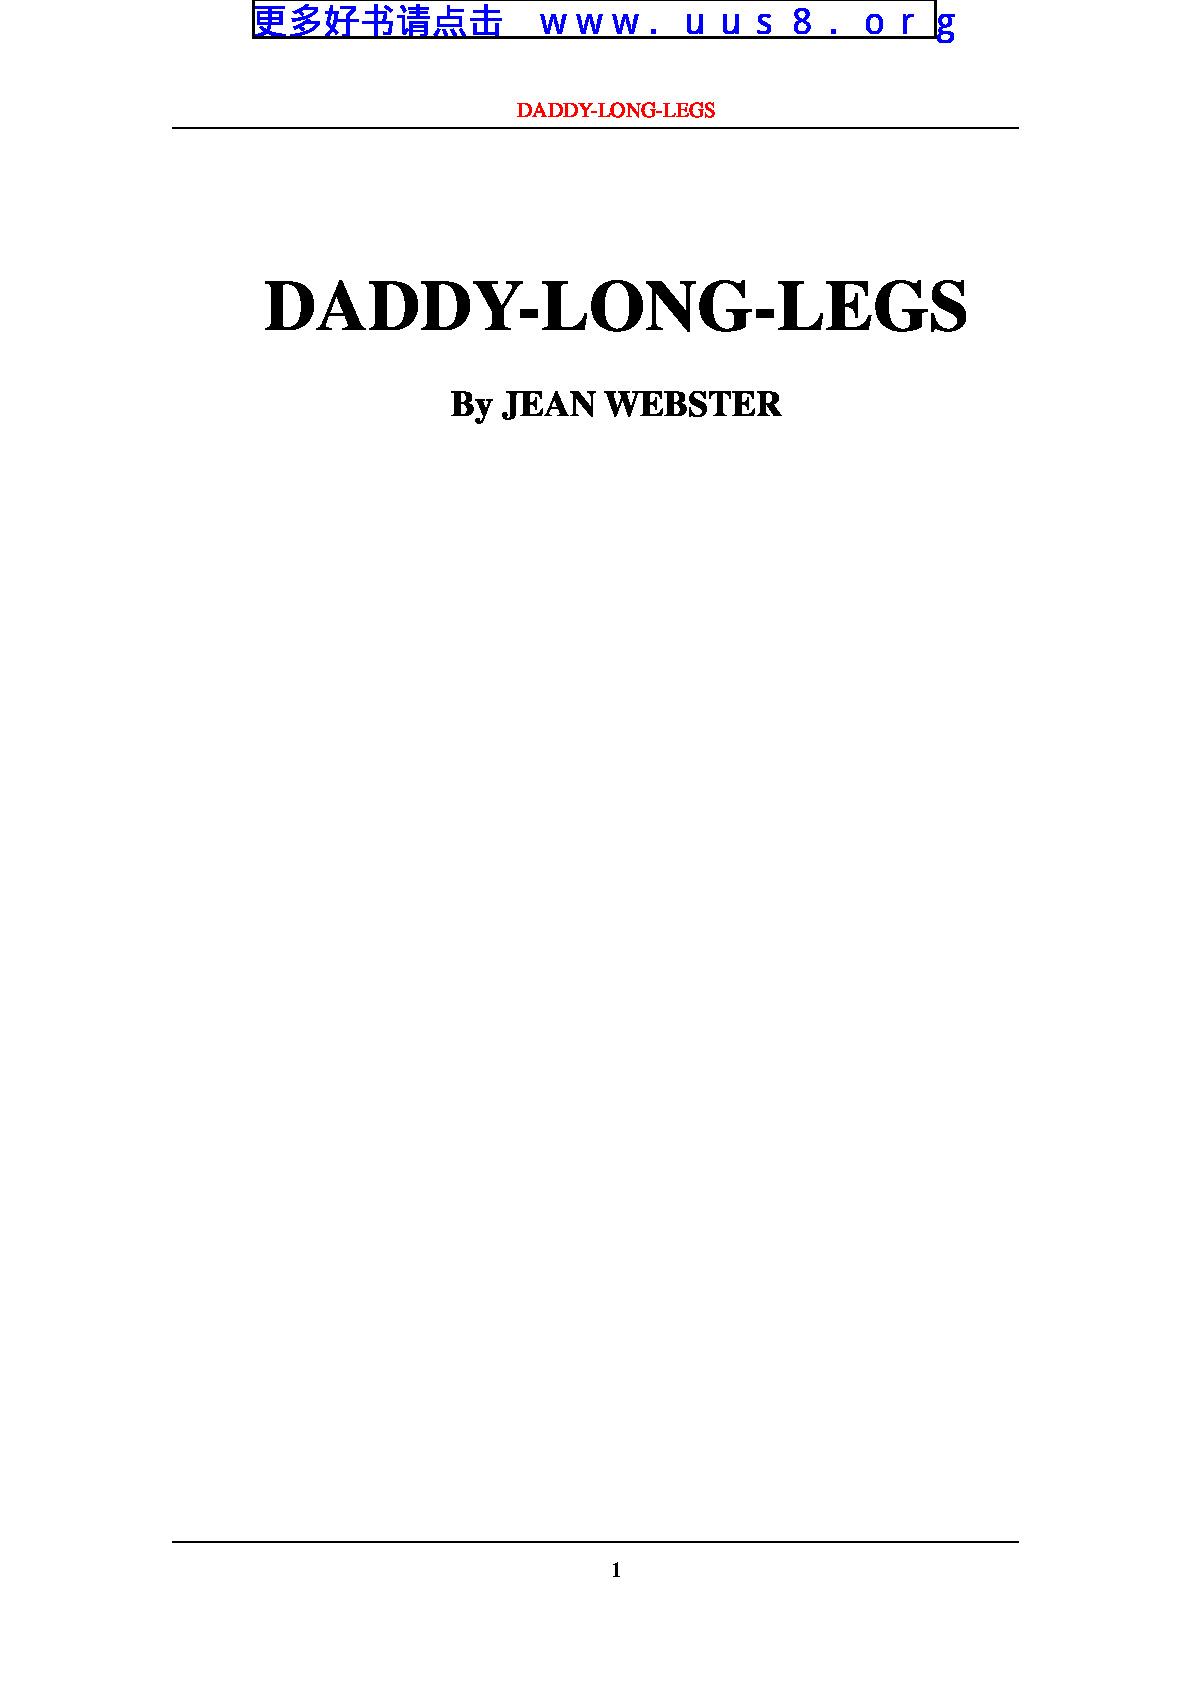 DADDY-LONG-LEGS(长腿爸爸)